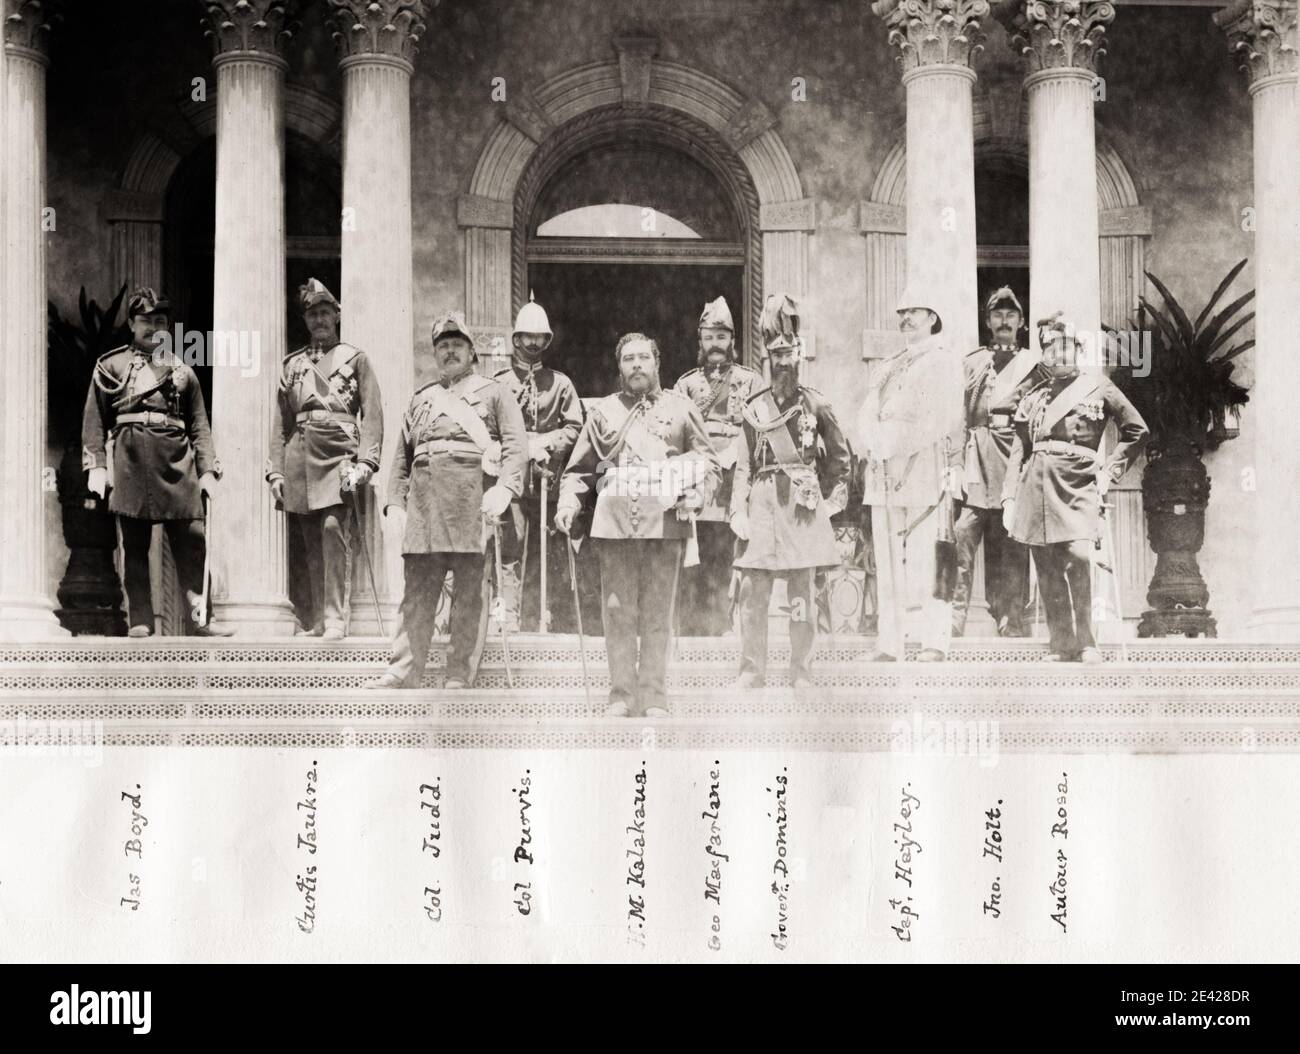 Fotografia d'epoca del XIX secolo: Kalākaua, fu l'ultimo re e penultimo monarca del Regno delle Hawaii che regnò dal 12 febbraio 1874 fino alla sua morte. Raffigurato con figure senior e ufficiali dell'esercito. Foto Stock